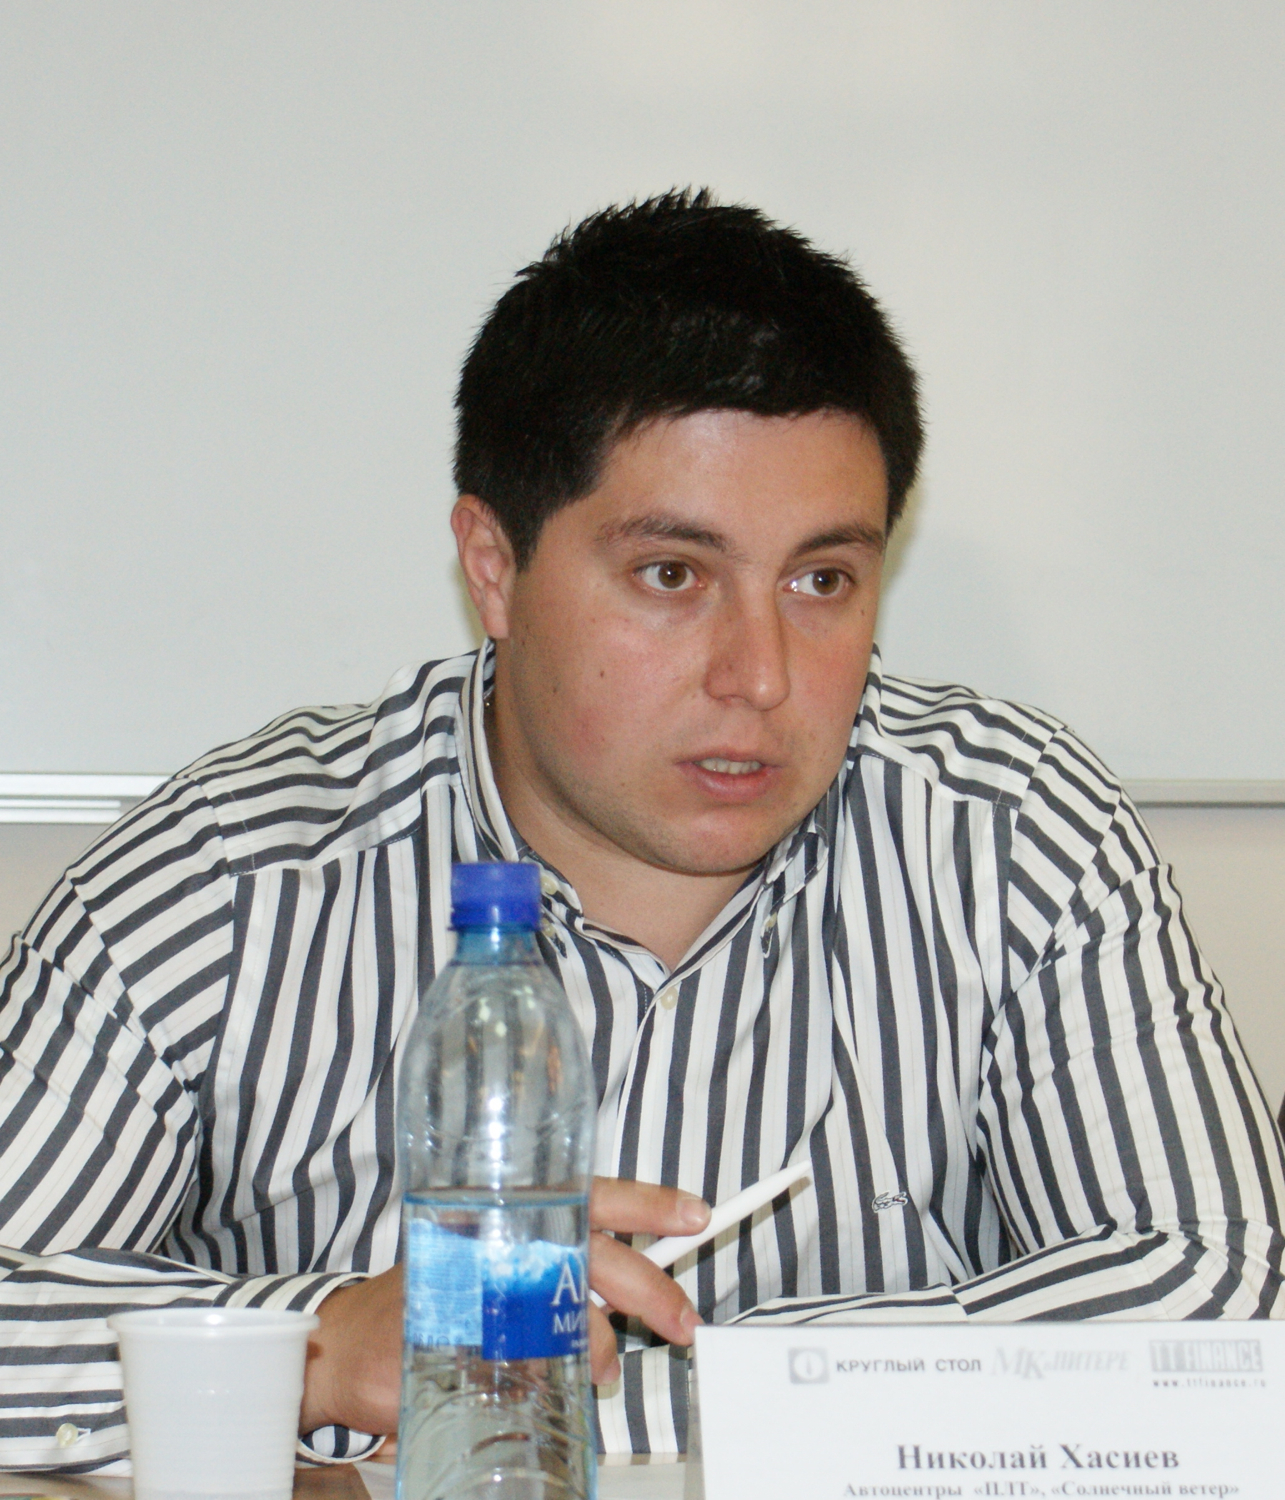 Николай Хасиев – директор по продажам Автоцентров  «ПЛТ», «Солнечный ветер»

